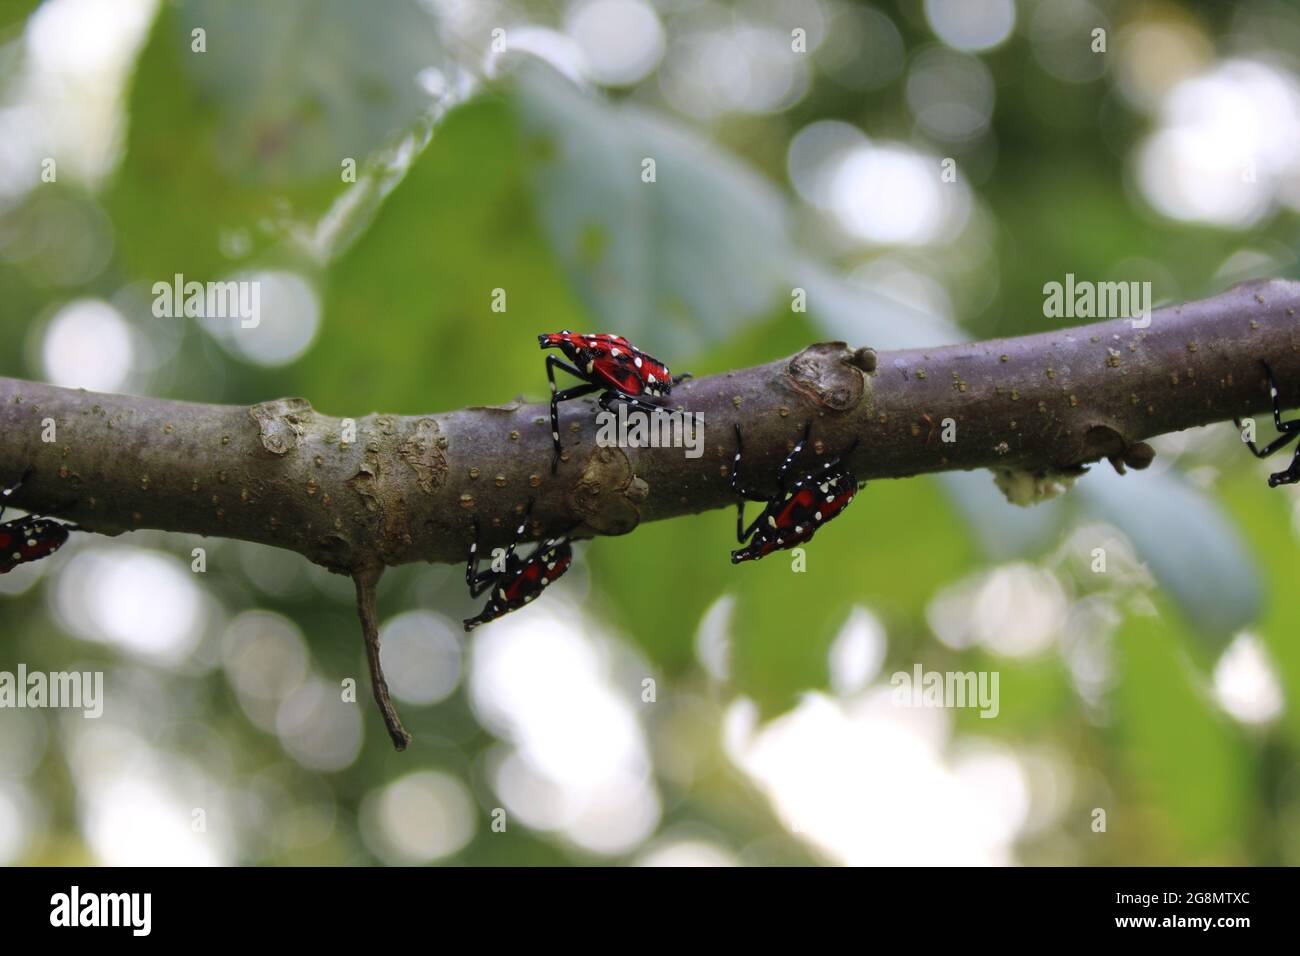 Spotted Lanternfly Nymphs on a Black Walnut Branch Stock Photo